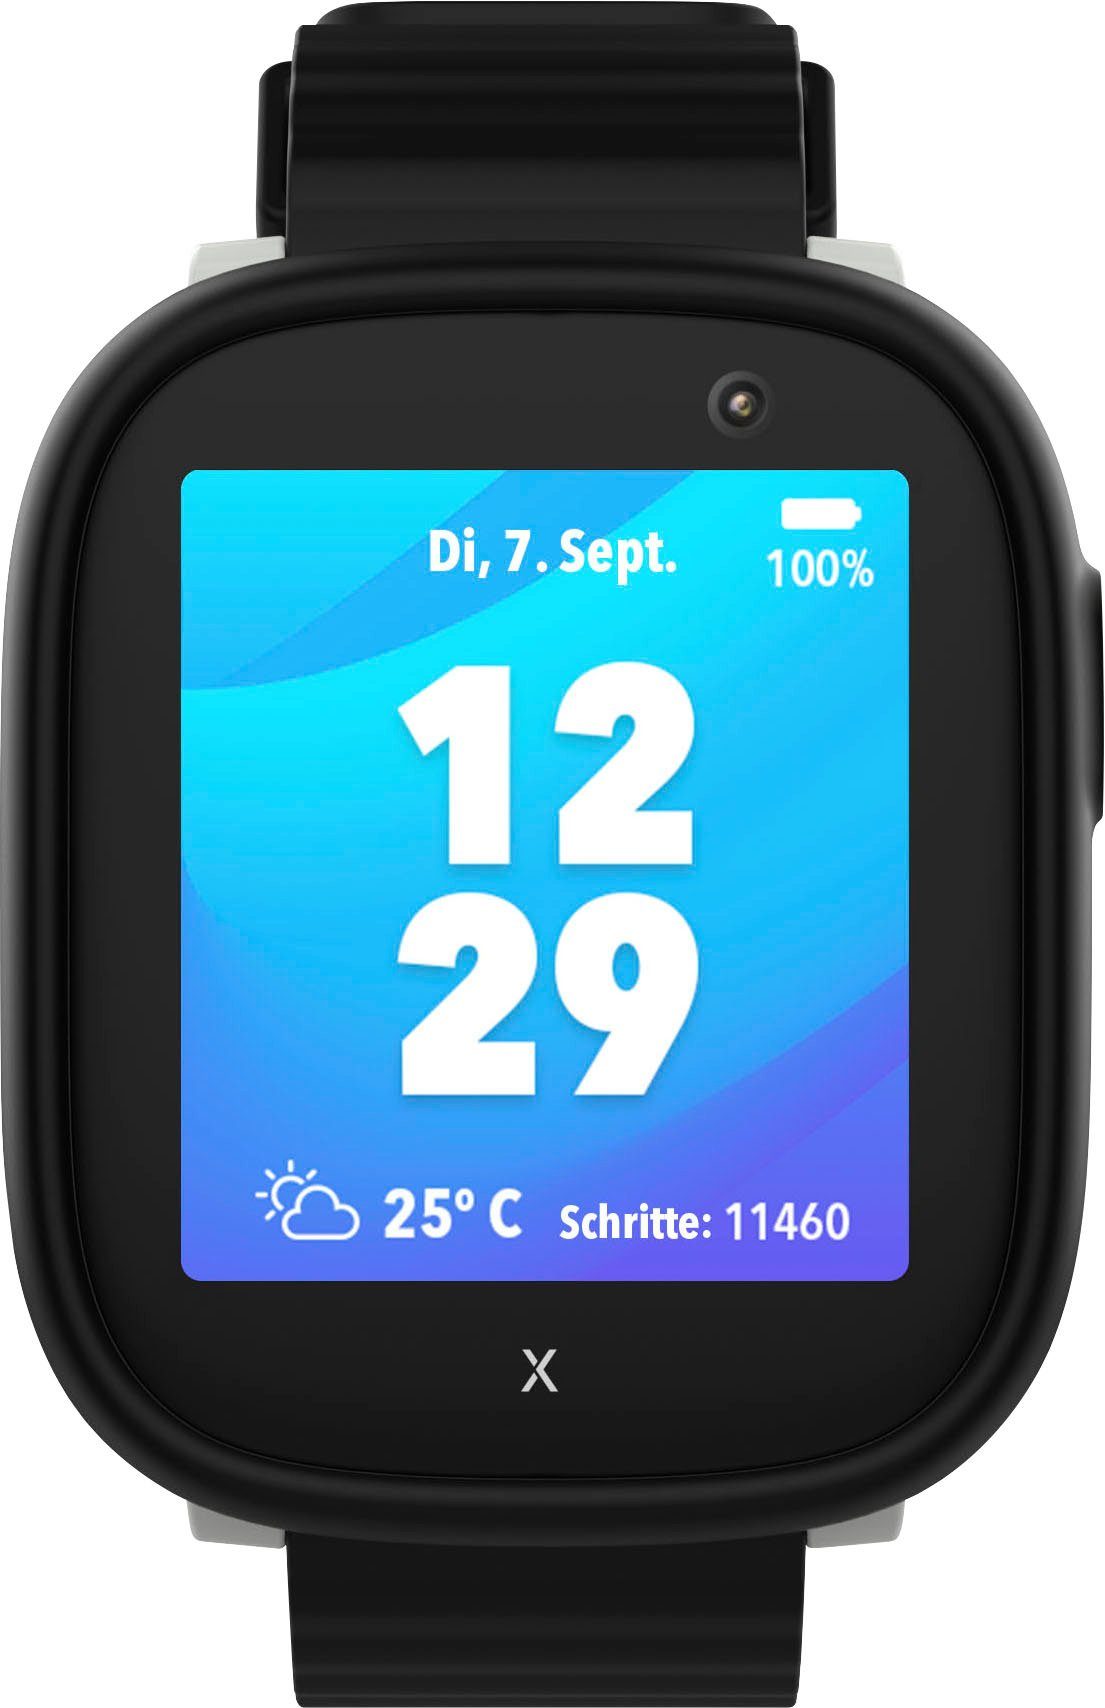 Xplora X6Play Kinder- Smartwatch (3,86 cm/1,52 Zoll, Android Wear) schwarz/schwarz | alle Smartwatches